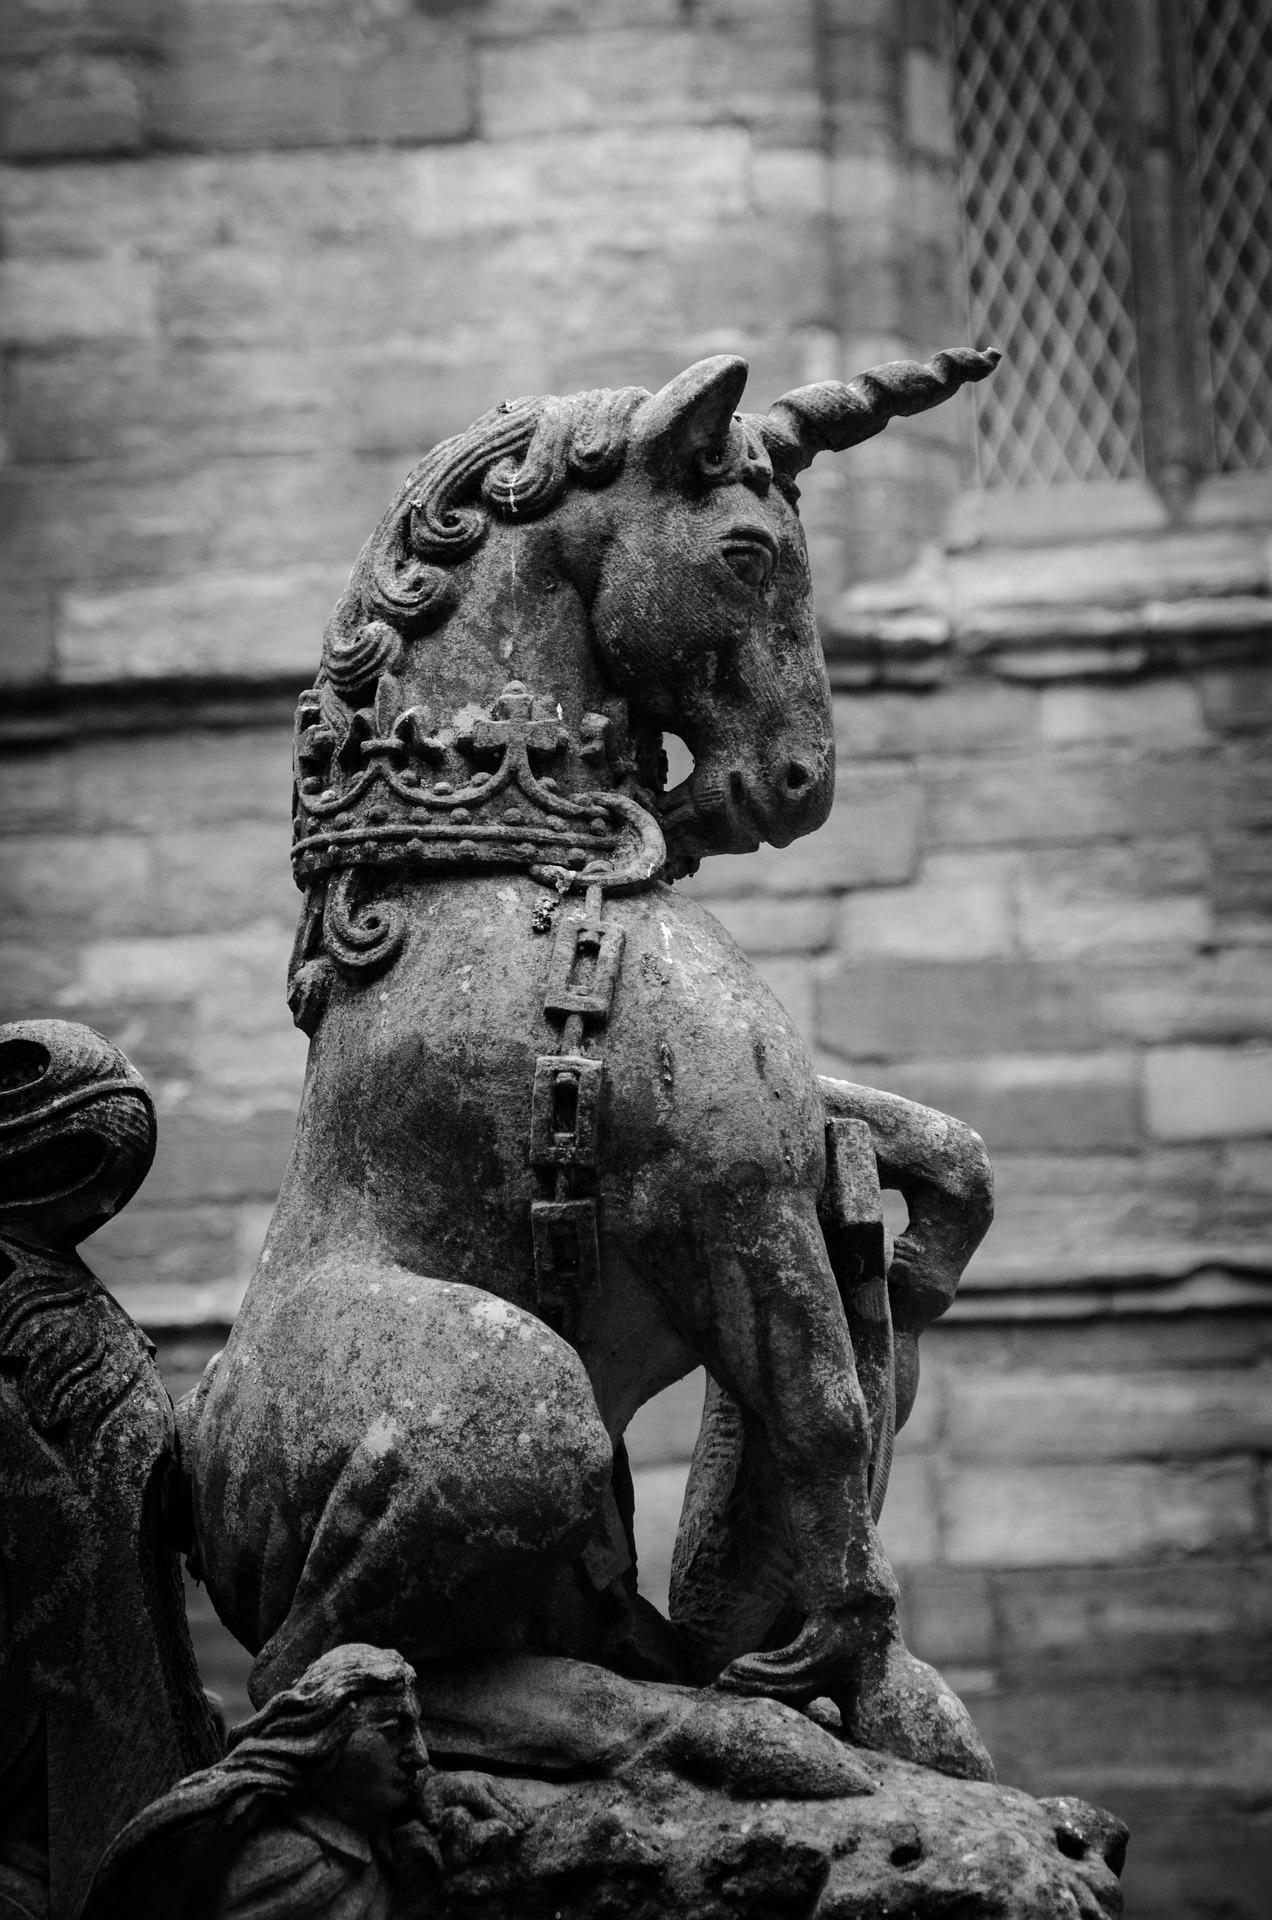 unicorn statue in Scotland